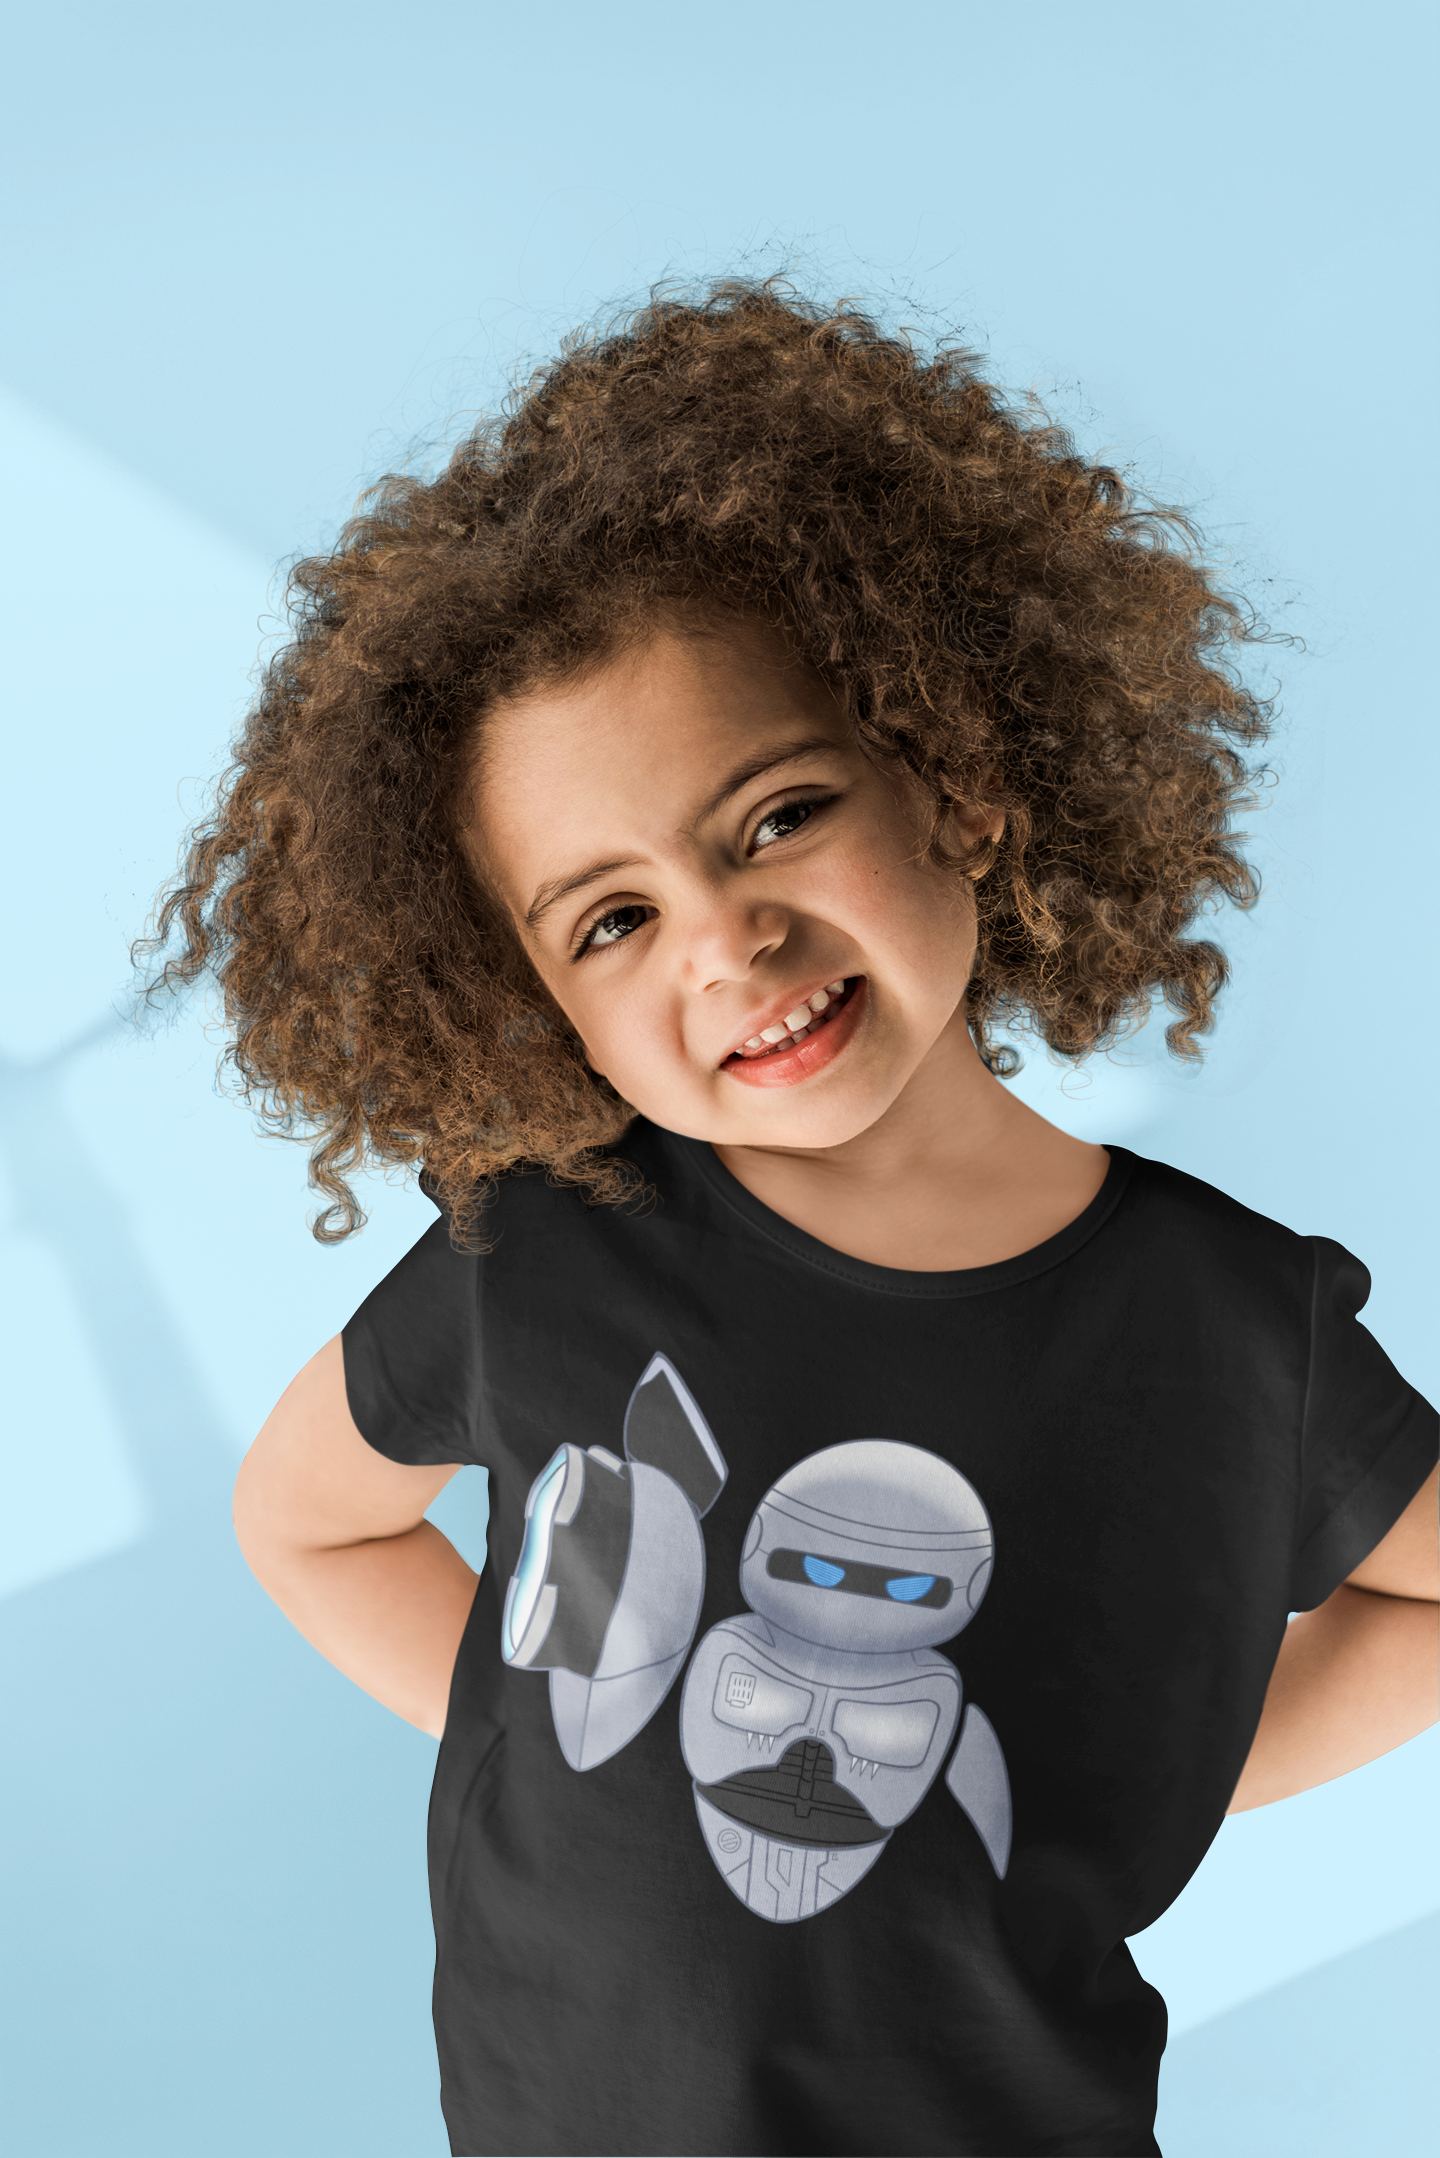 EVACOP: Eva from WALL-E as RoboCop Toddler T-Shirt